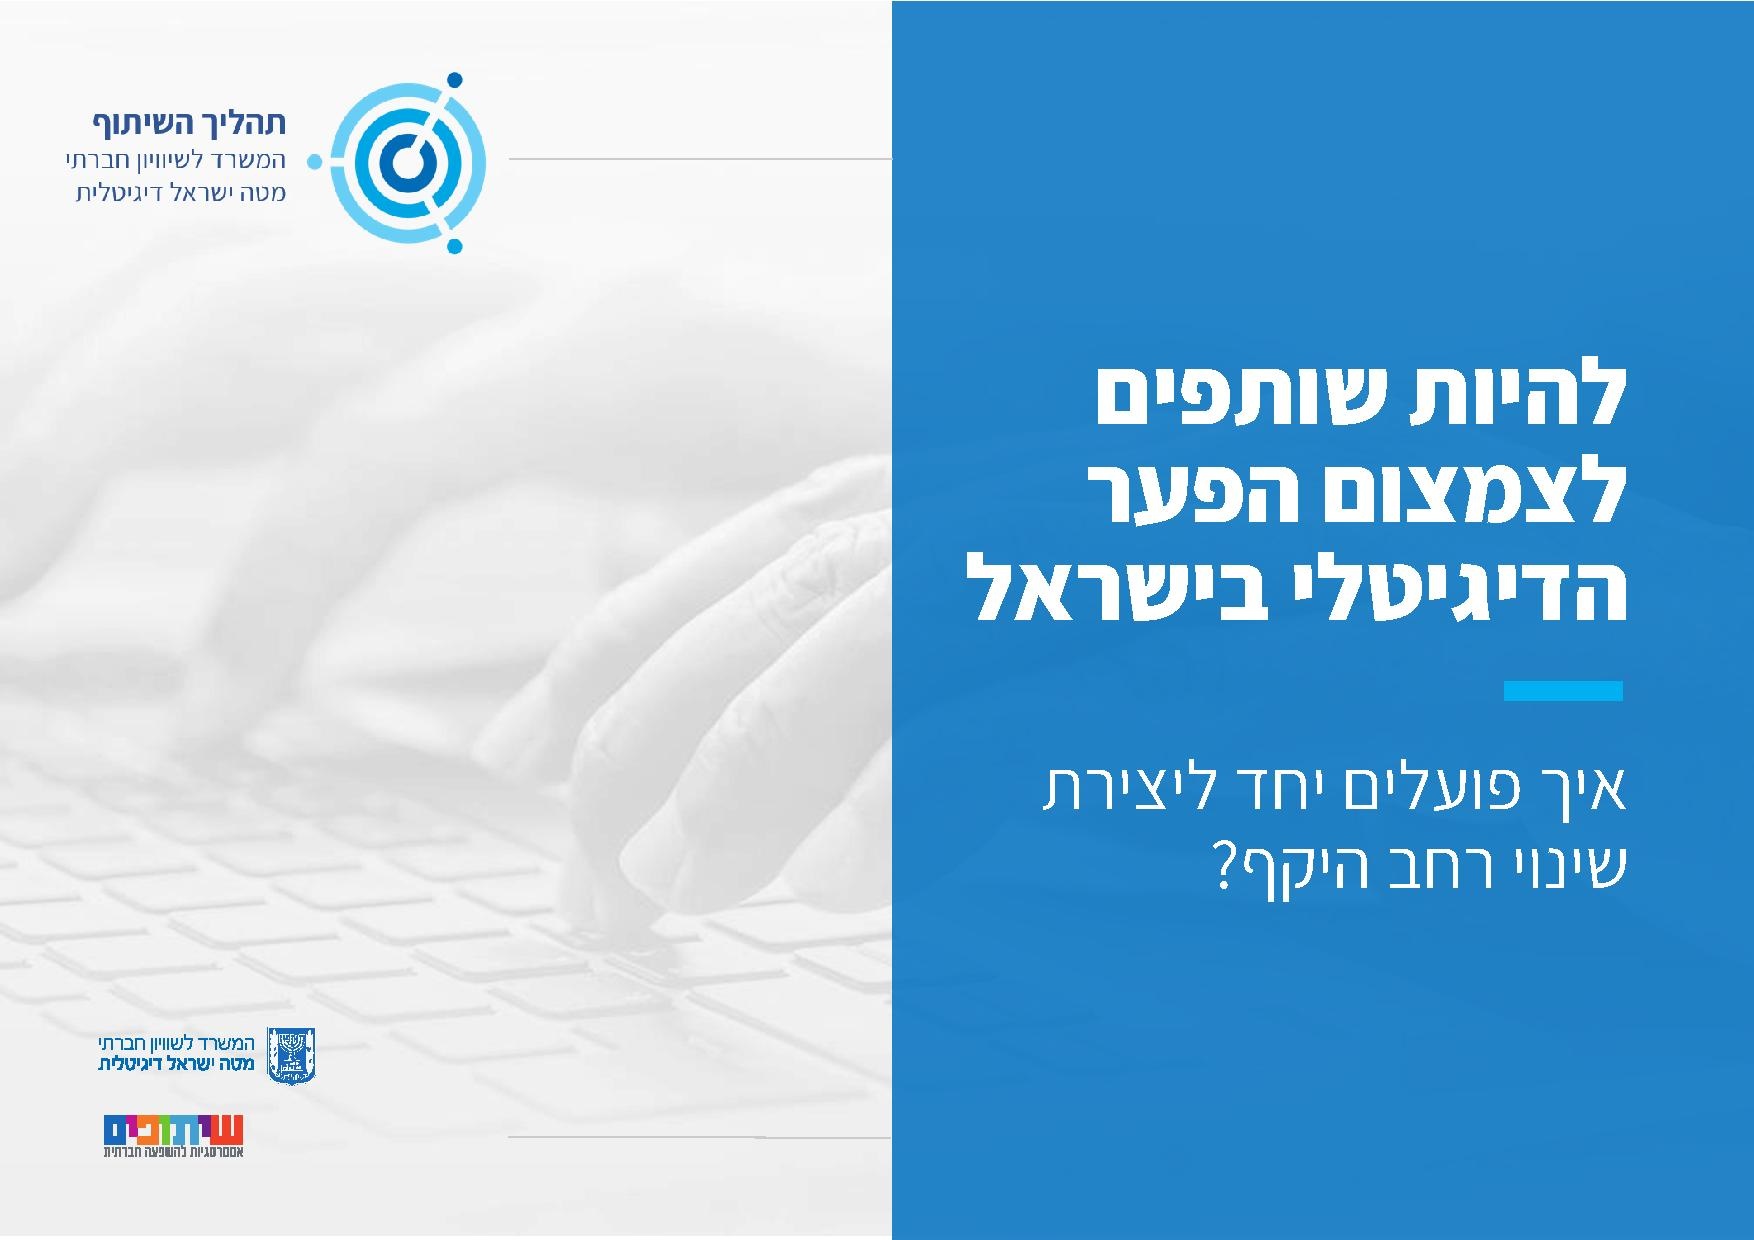 המדריך להיות שותפים לצמצום הפער הדיגיטלי בישראל - איך פועלים יחד ליצירת שינוי רחב היקף .pdf